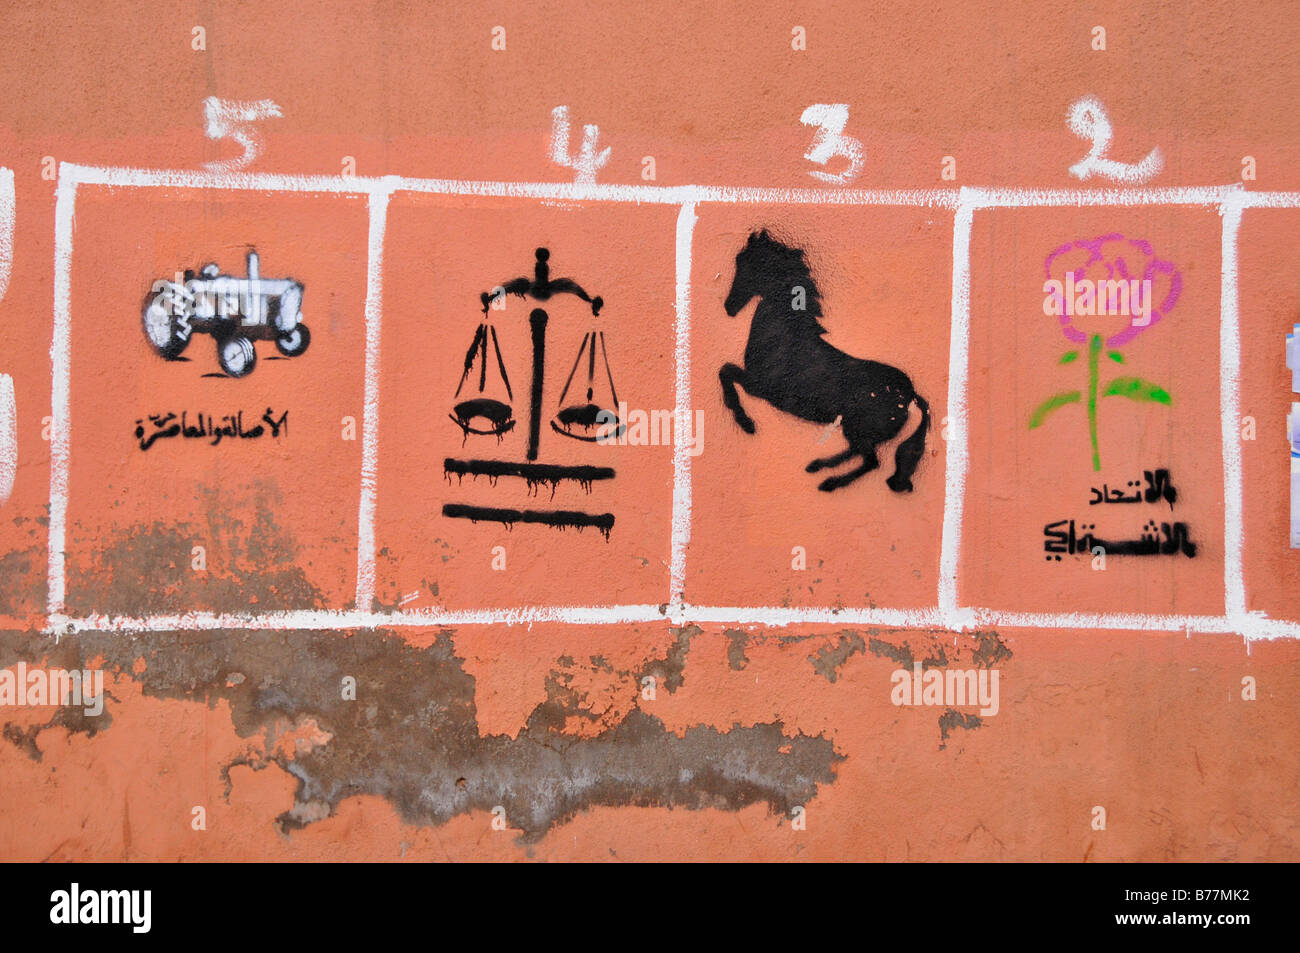 Marokkanische Abstimmung Werbung mit den Symbolen der verschiedenen Parteien auf eine Wand, Marrekech, Marokko, Afrika Stockfoto